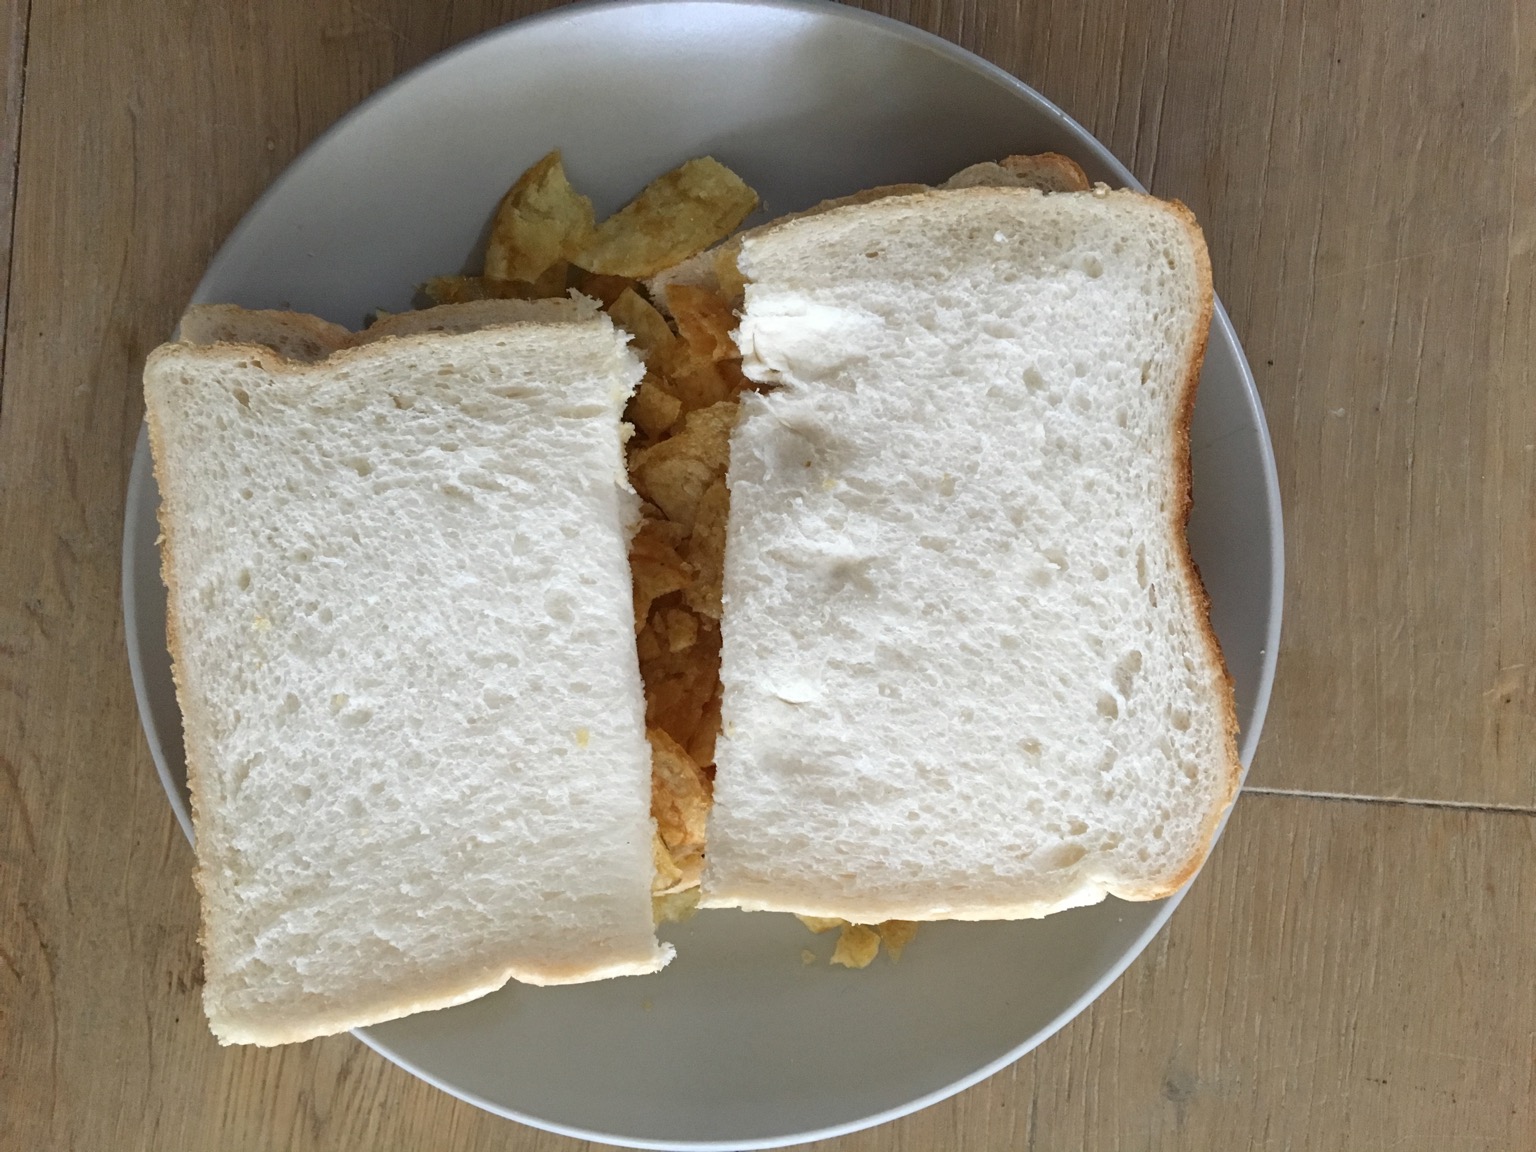 White crisp sandwich sliced in half